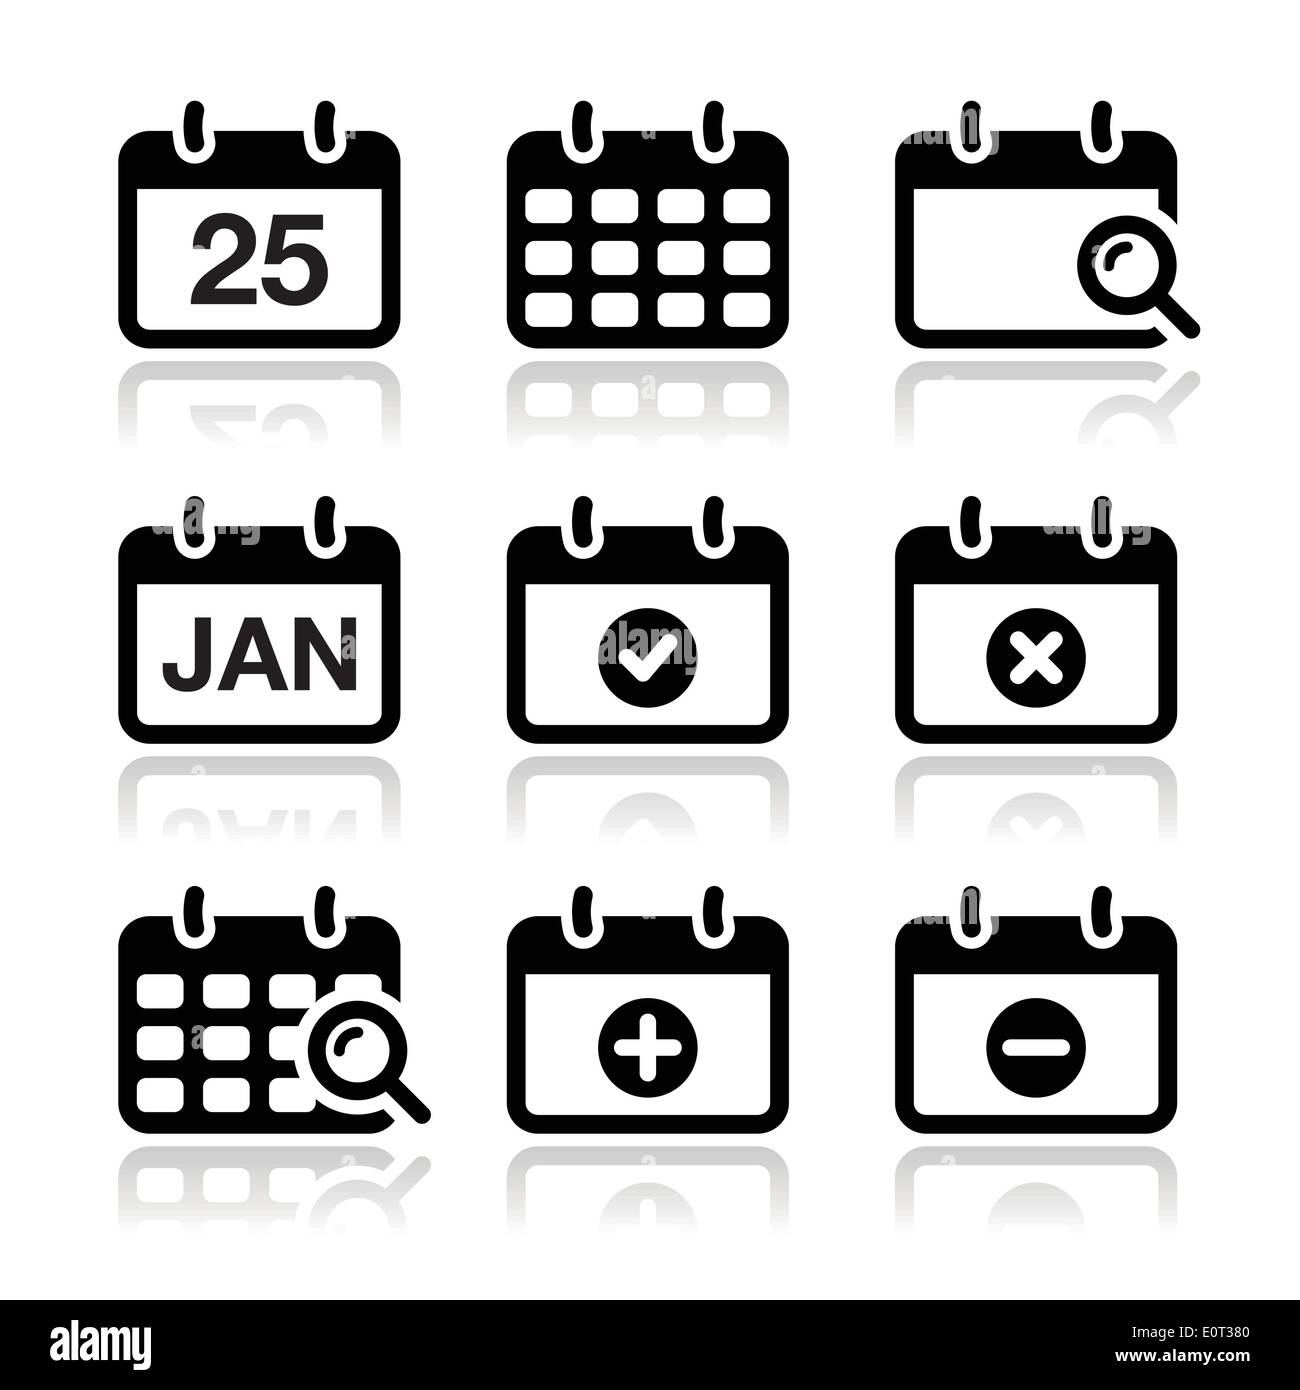 Calendar date vector buttons set Stock Vector